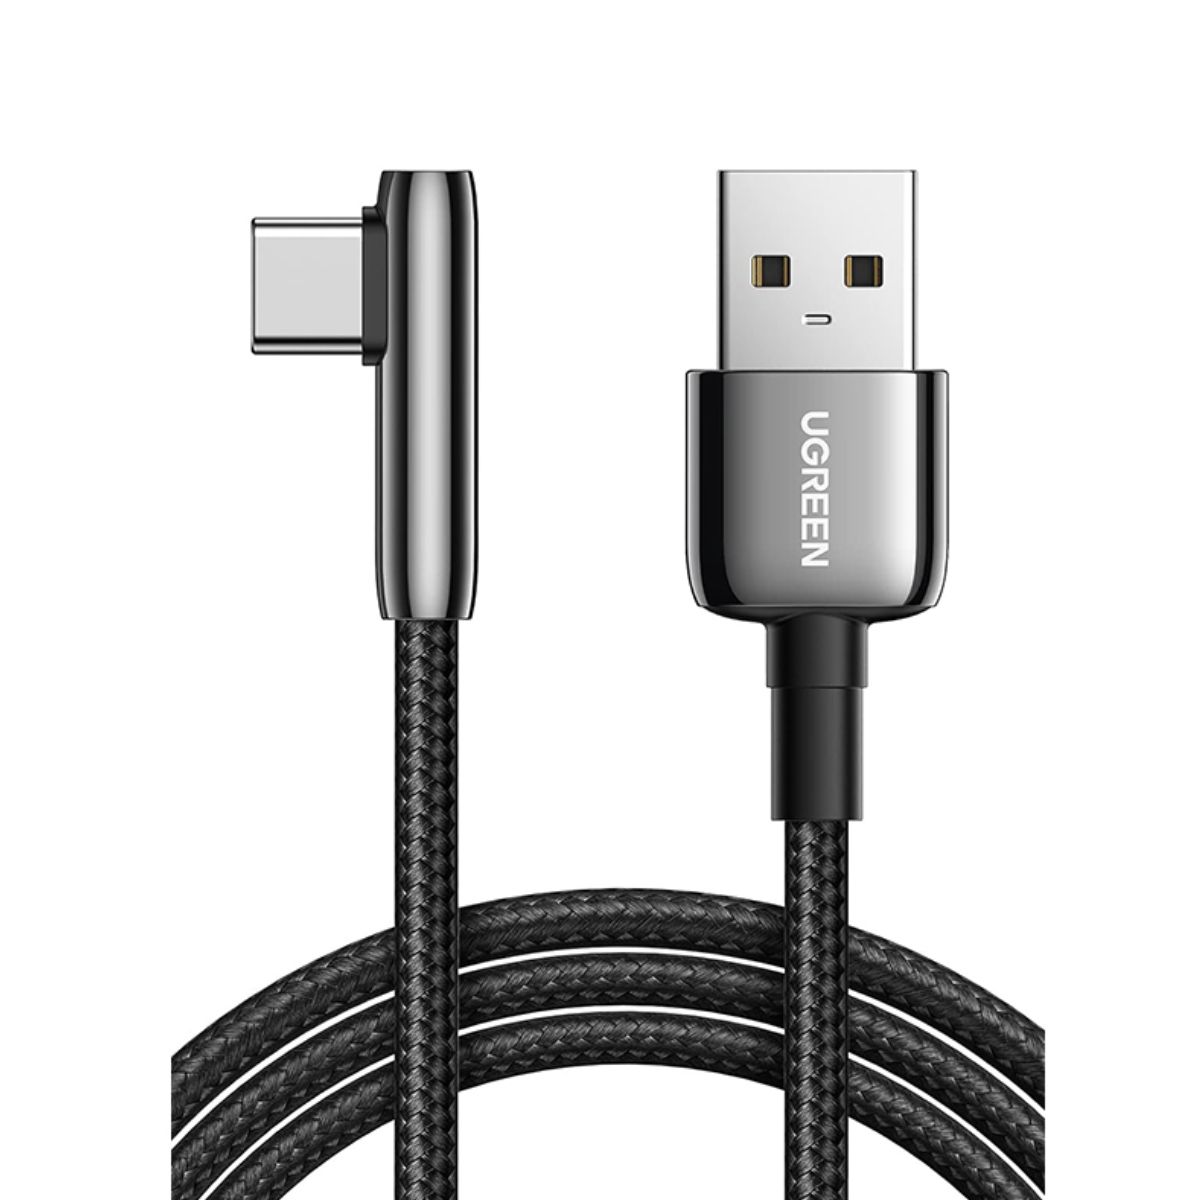 Cáp dài 2m USB Type-C bẻ góc Ugreen 70415 US313 màu đen, vỏ hợp kim kẽm